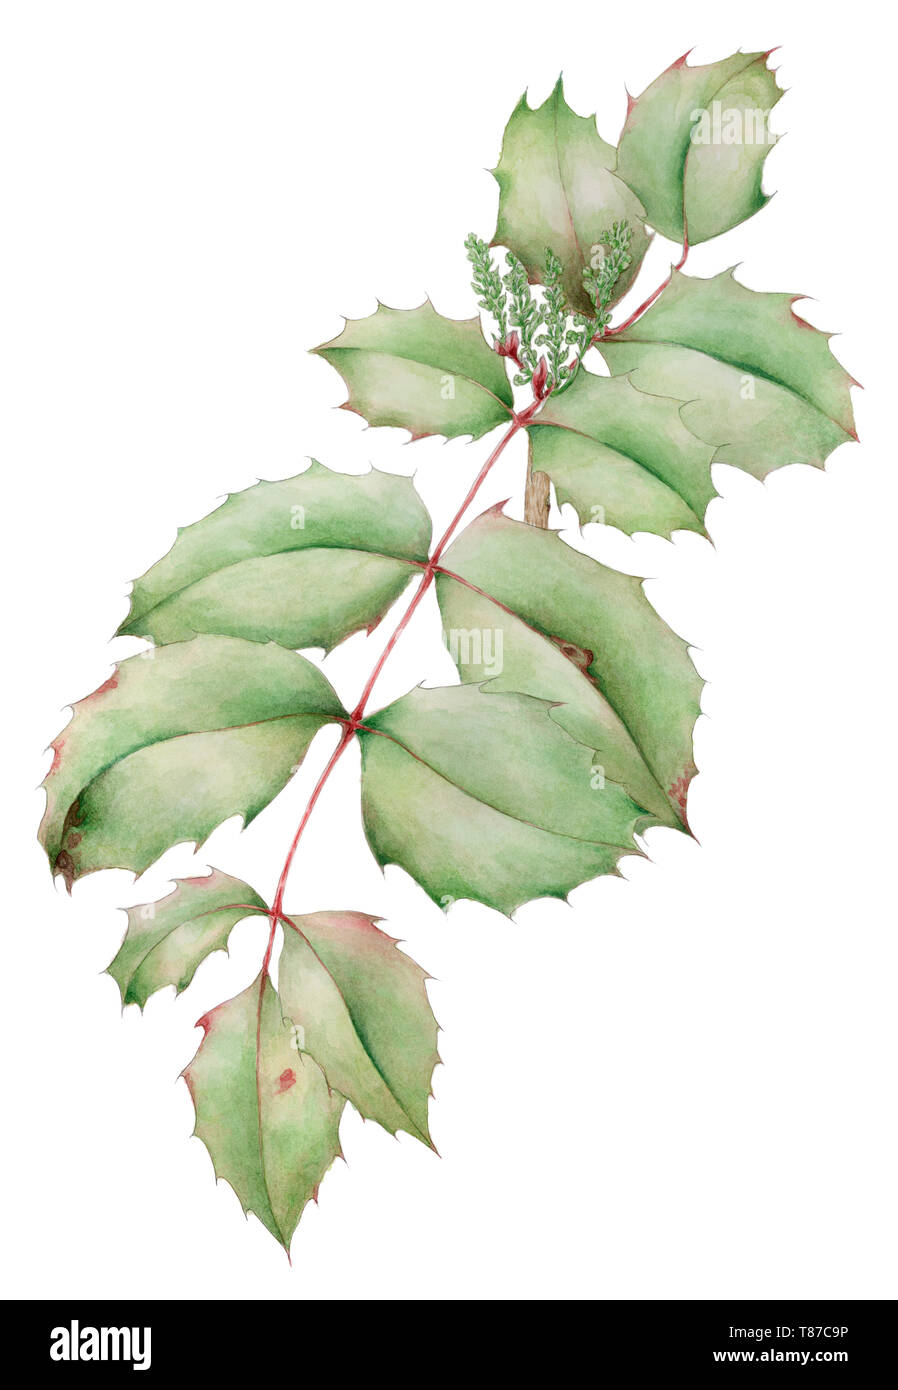 Oregon-UVA (Mahonia aquifolium) foglie con infiorescenza giovani germogli disegno botanico su sfondo bianco. Matita e acquarello su carta. Foto Stock